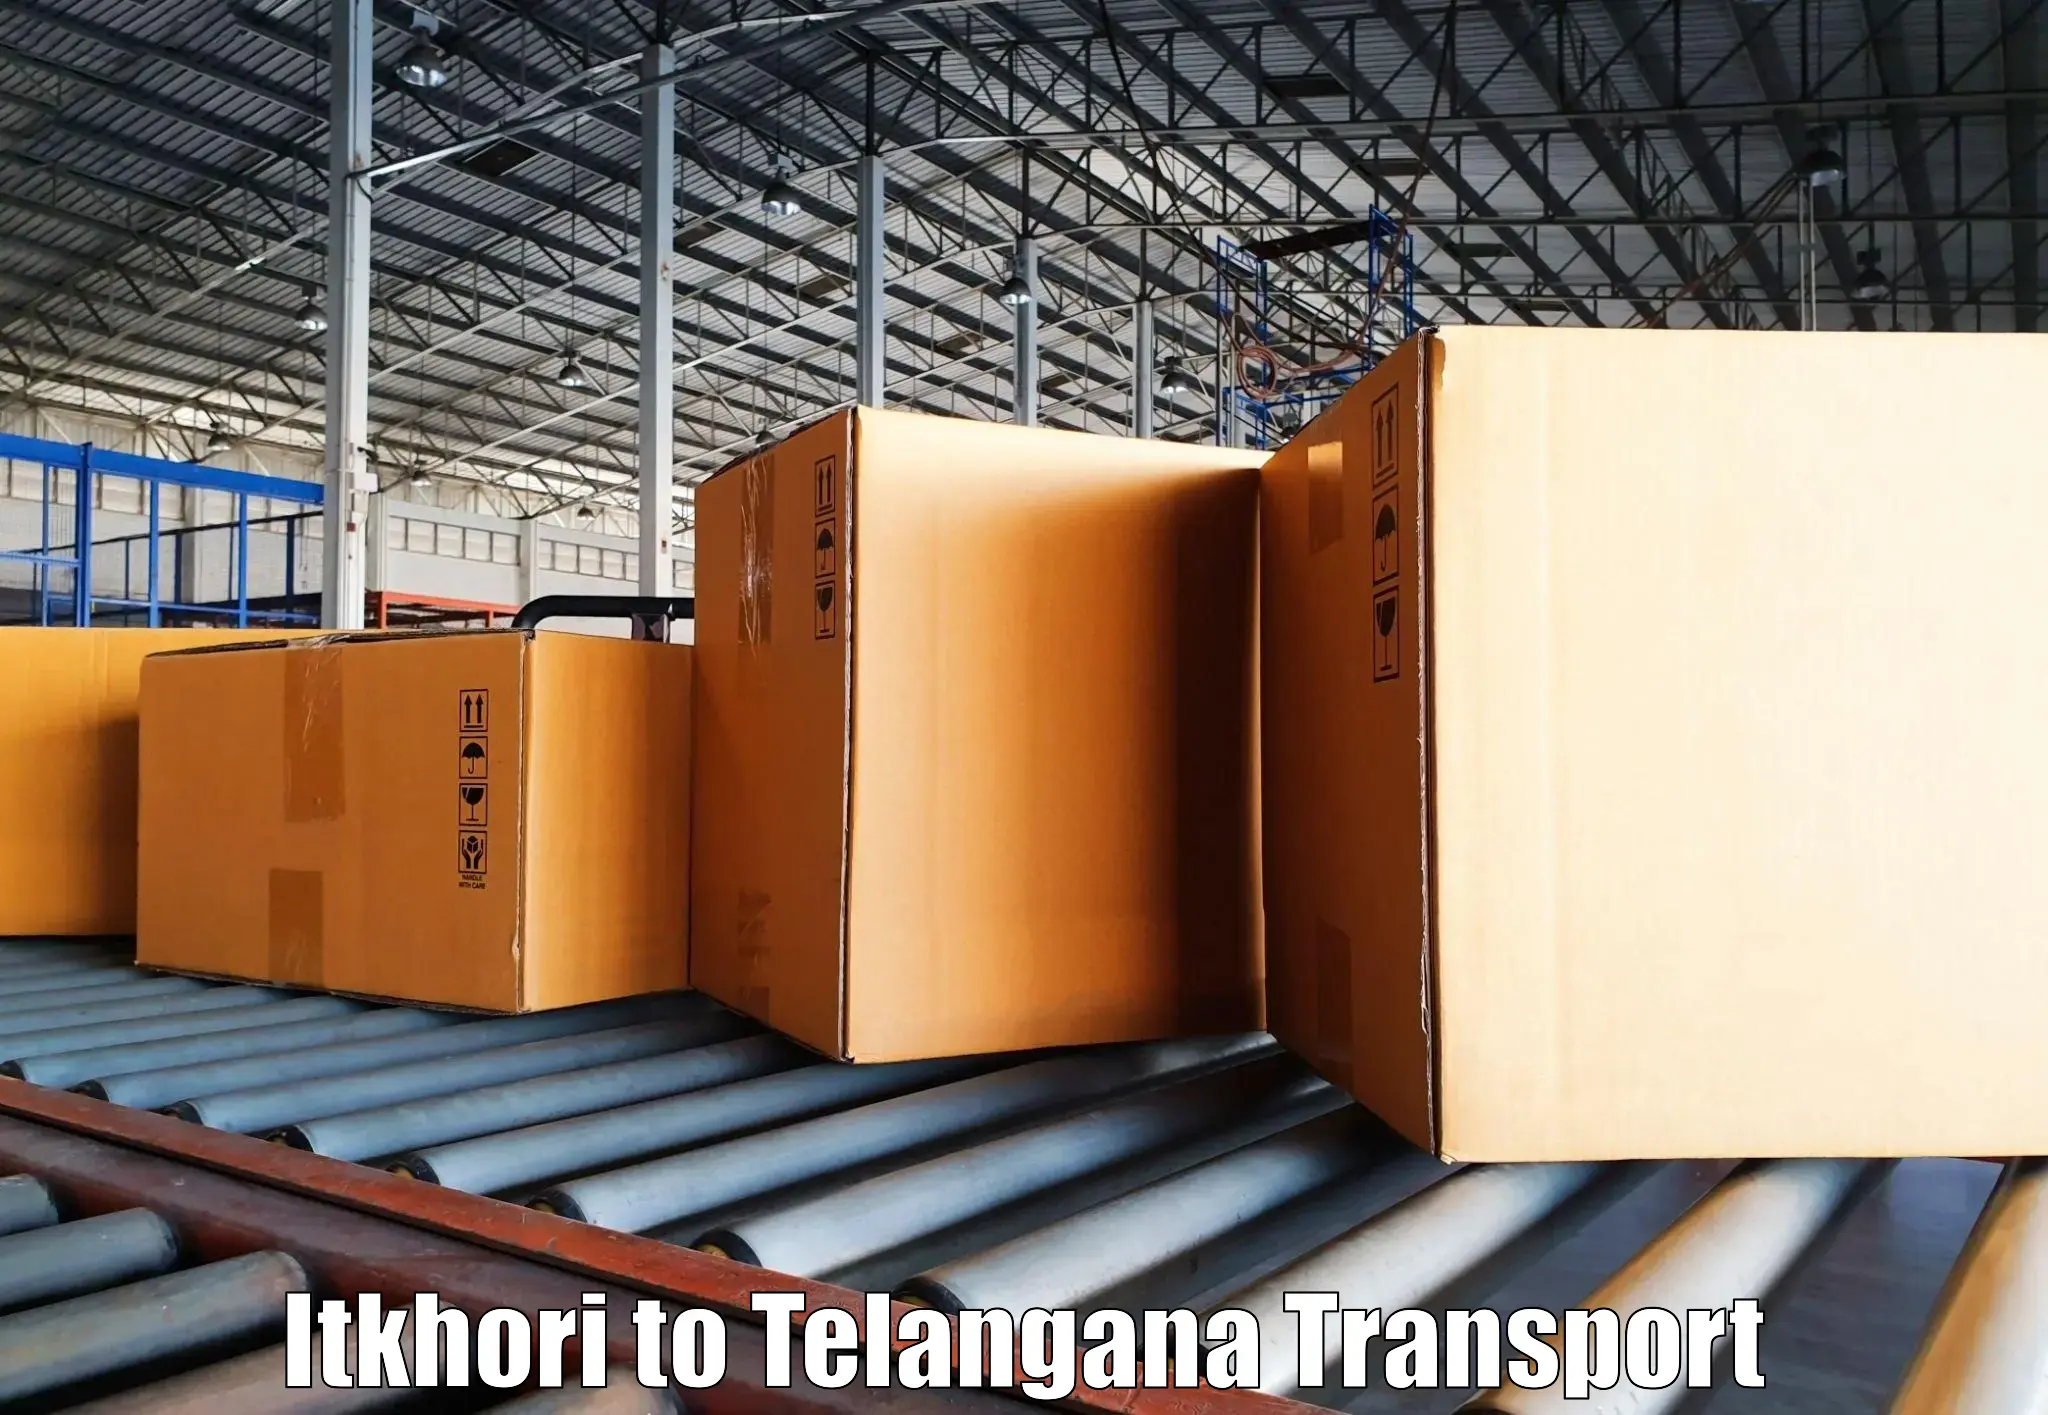 India truck logistics services Itkhori to Rudrangi